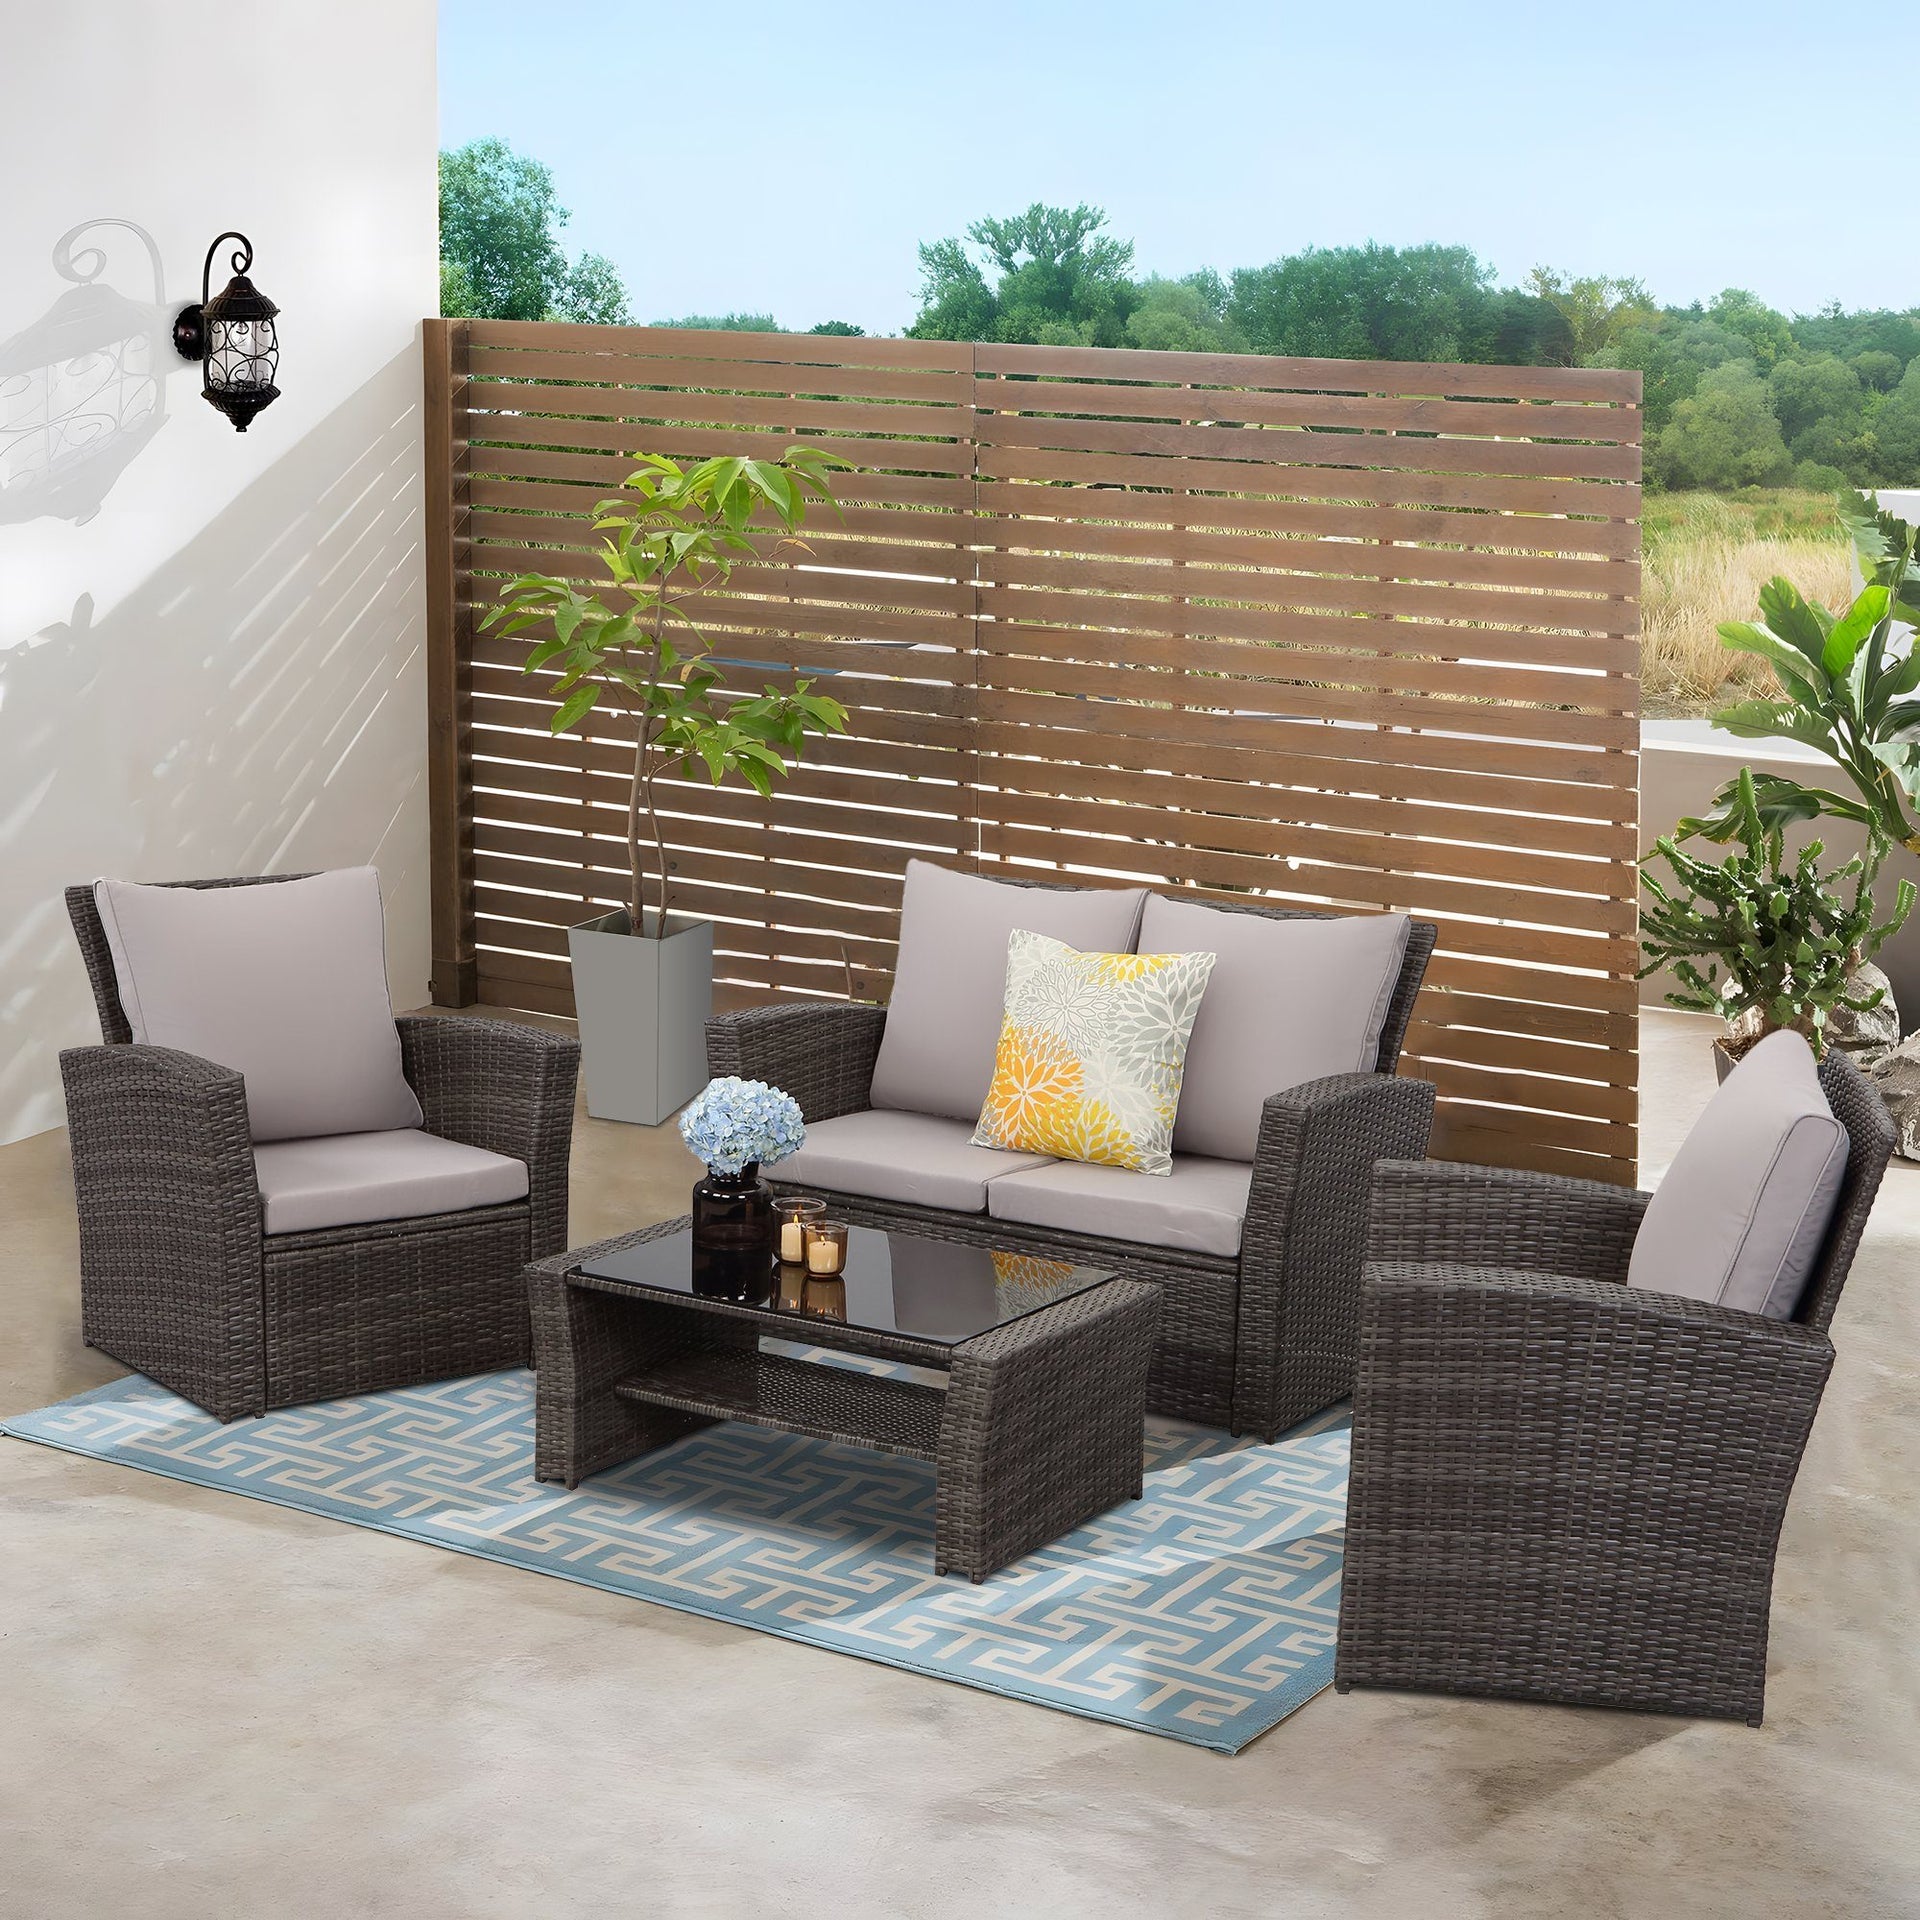 Gartenlounge Set aus Polyrattan mit Polster für 4 Personen Grau | Lounge-Set  Wetterfest für den Garten, Balkon & Terrasse – MeXo-Home